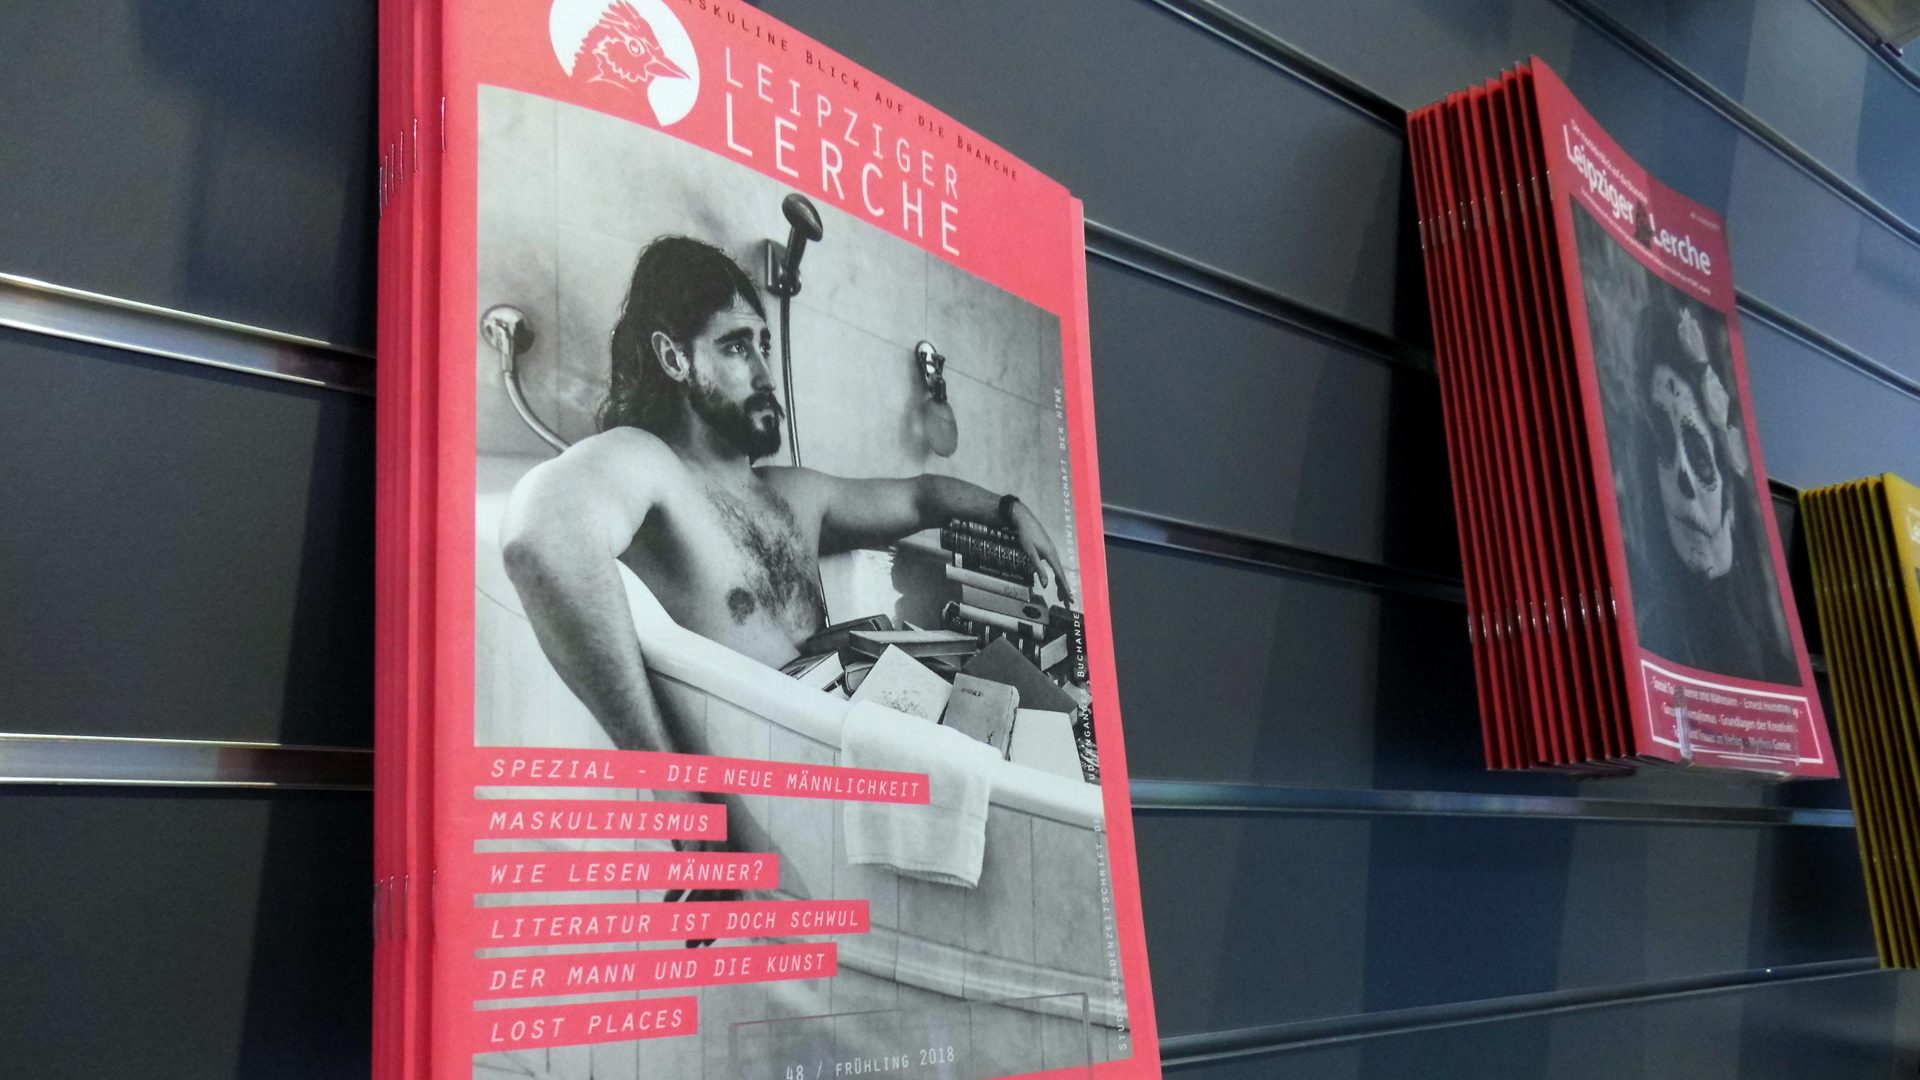 Auf der Leipziger Buchmesse im März vorgestellt, liegt die akuelle Ausgabe der "Leipziger Lerche" für euch bereit.